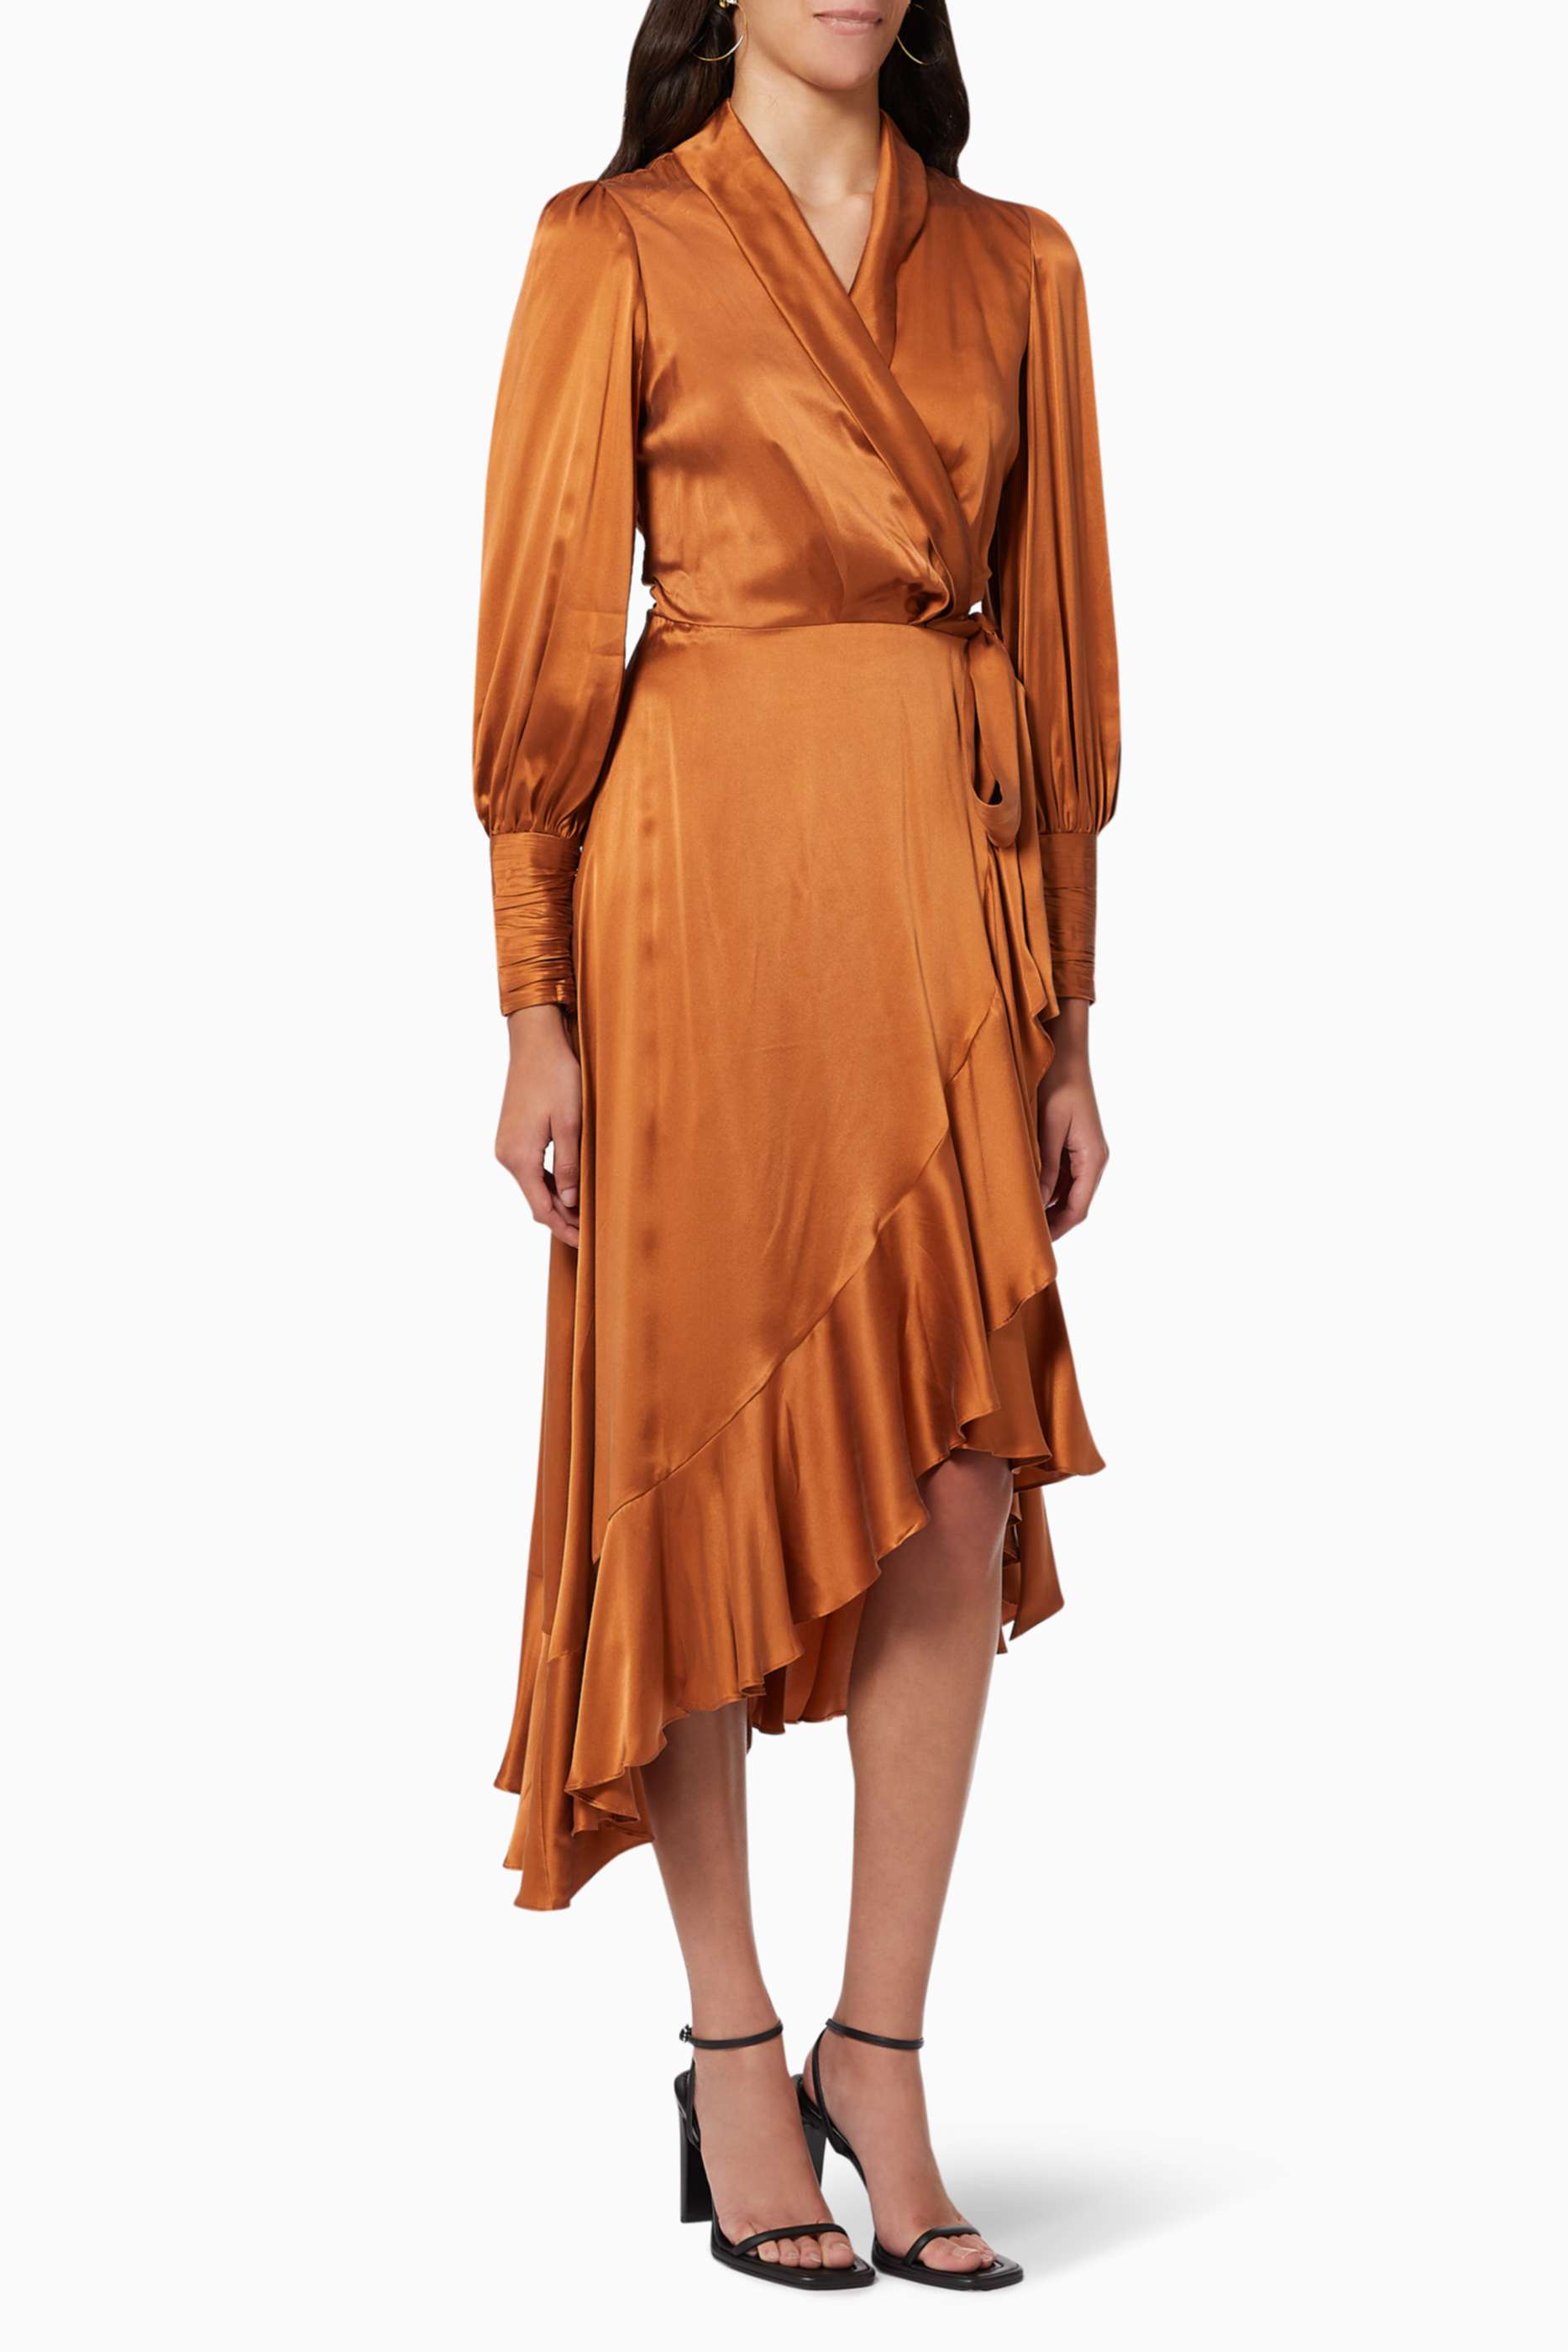 Shop Zimmermann Orange Wrap Midi Dress in Silk for Women | Ounass UAE